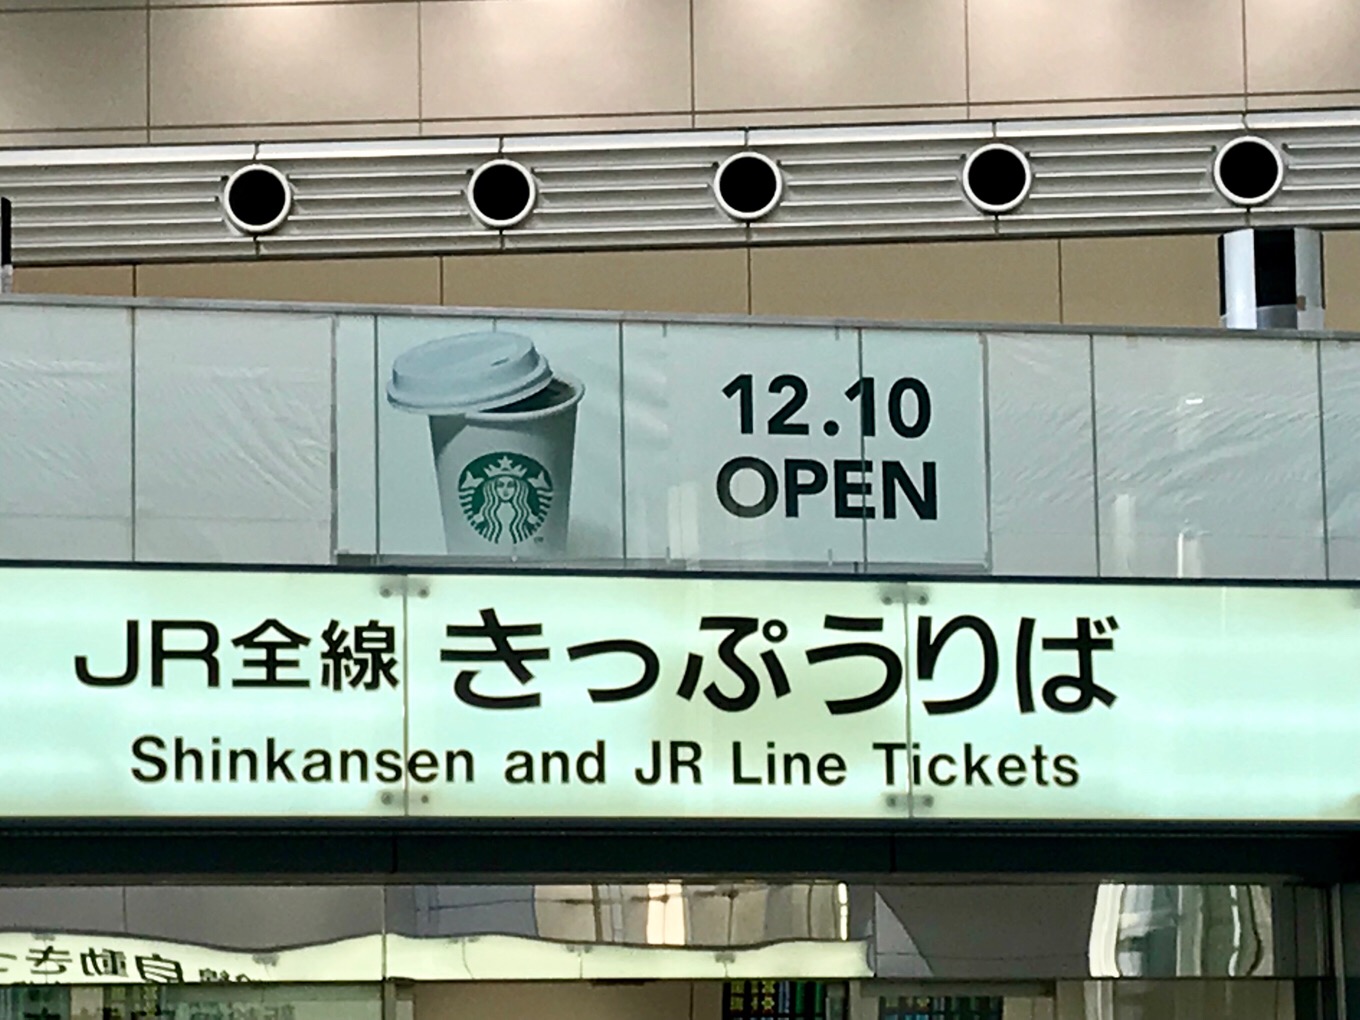 品川駅JR東海みどりの窓口のスタバオープンの横断幕